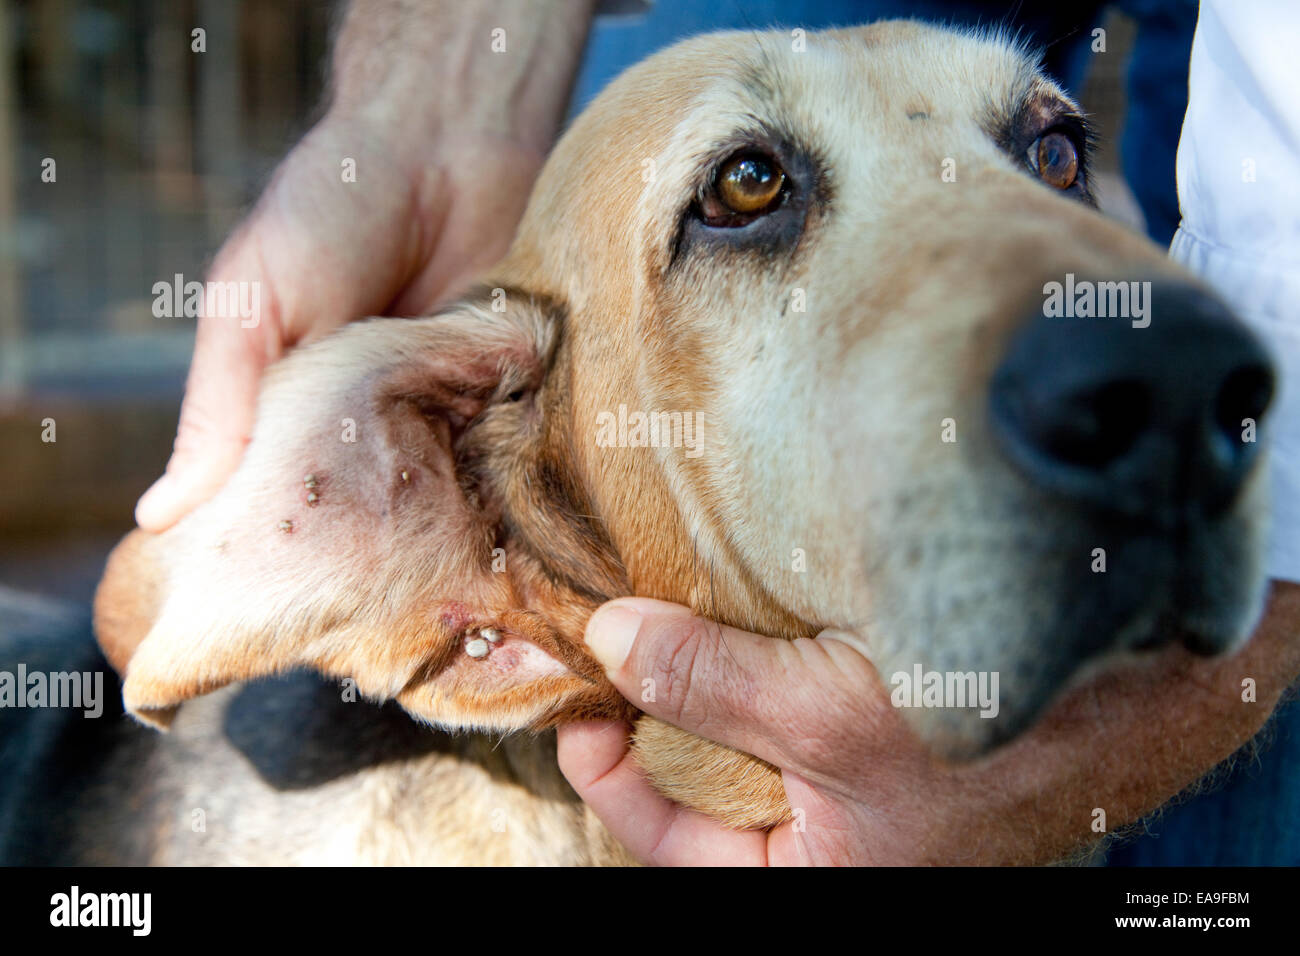 Sérums Summerland - les tiques Ixodes holocyclus (paralysie) sont cultivées à l'intérieur des chiens oreilles Banque D'Images